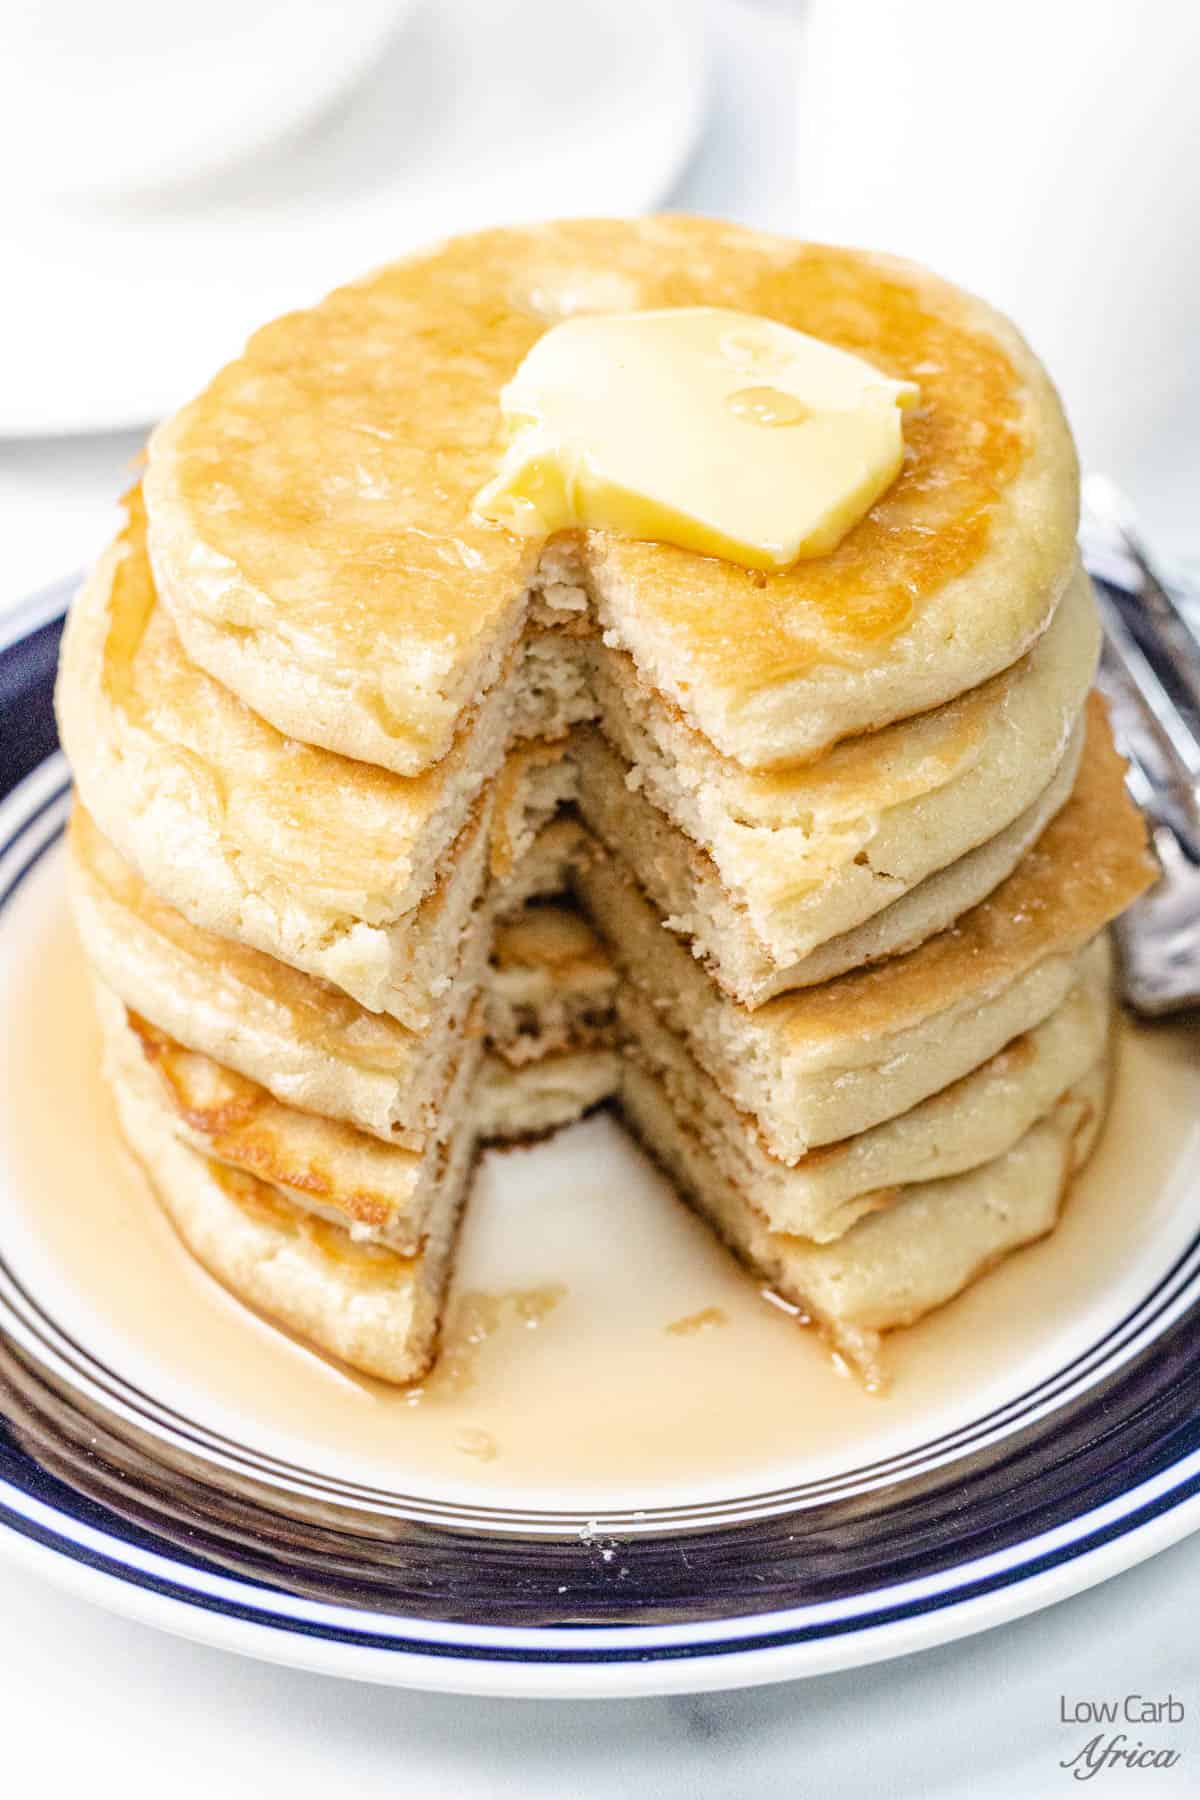 Ready-to-slice keto pancakes